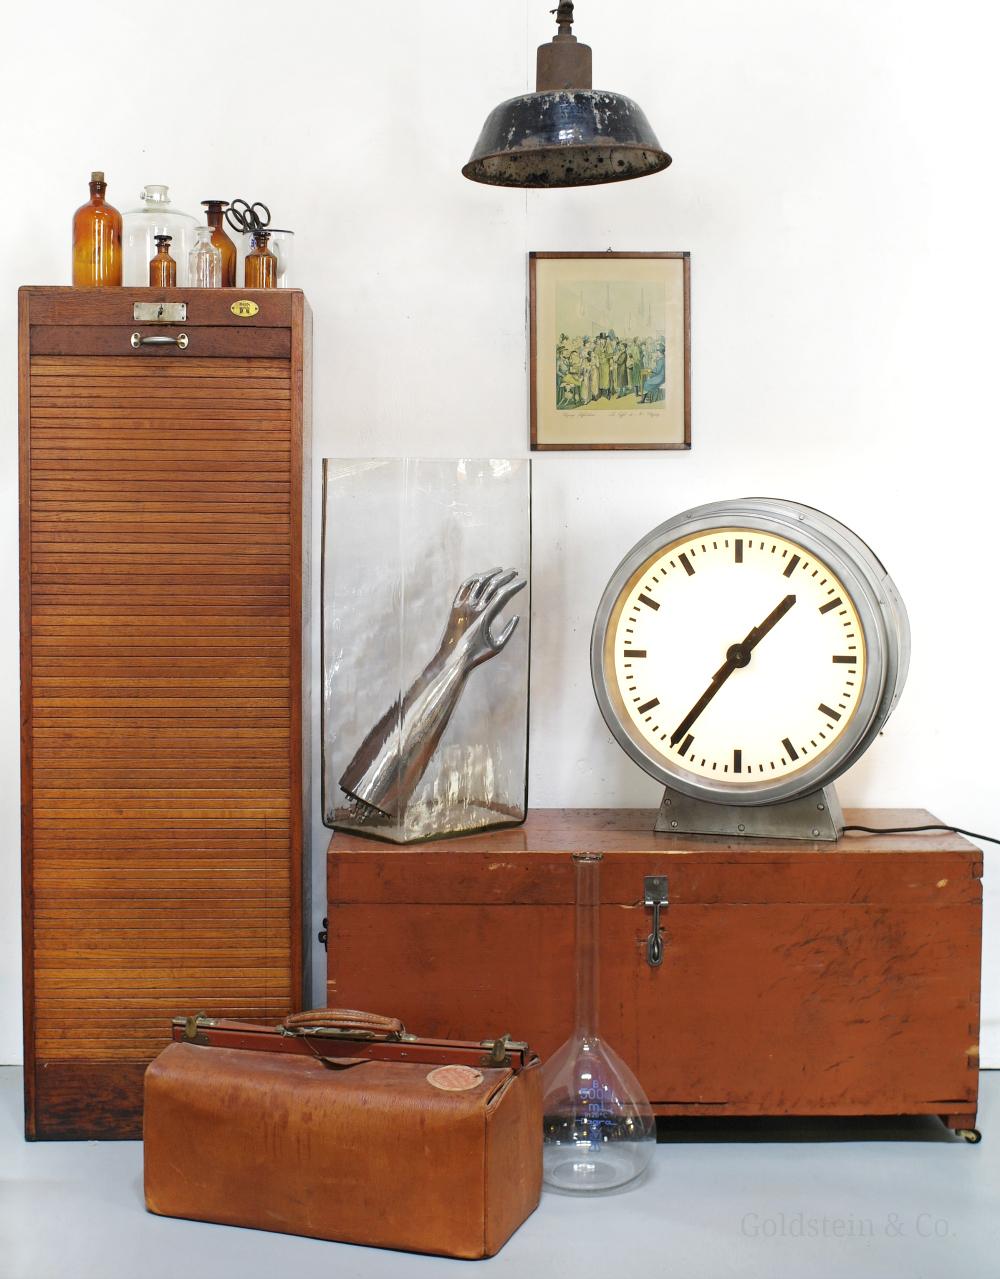 Warme Brauntöne #vintage #bodenvase #industriedesign #koffer #holzschrank #handarbeit #tischuhr ©Goldstein & Co., Leipzig